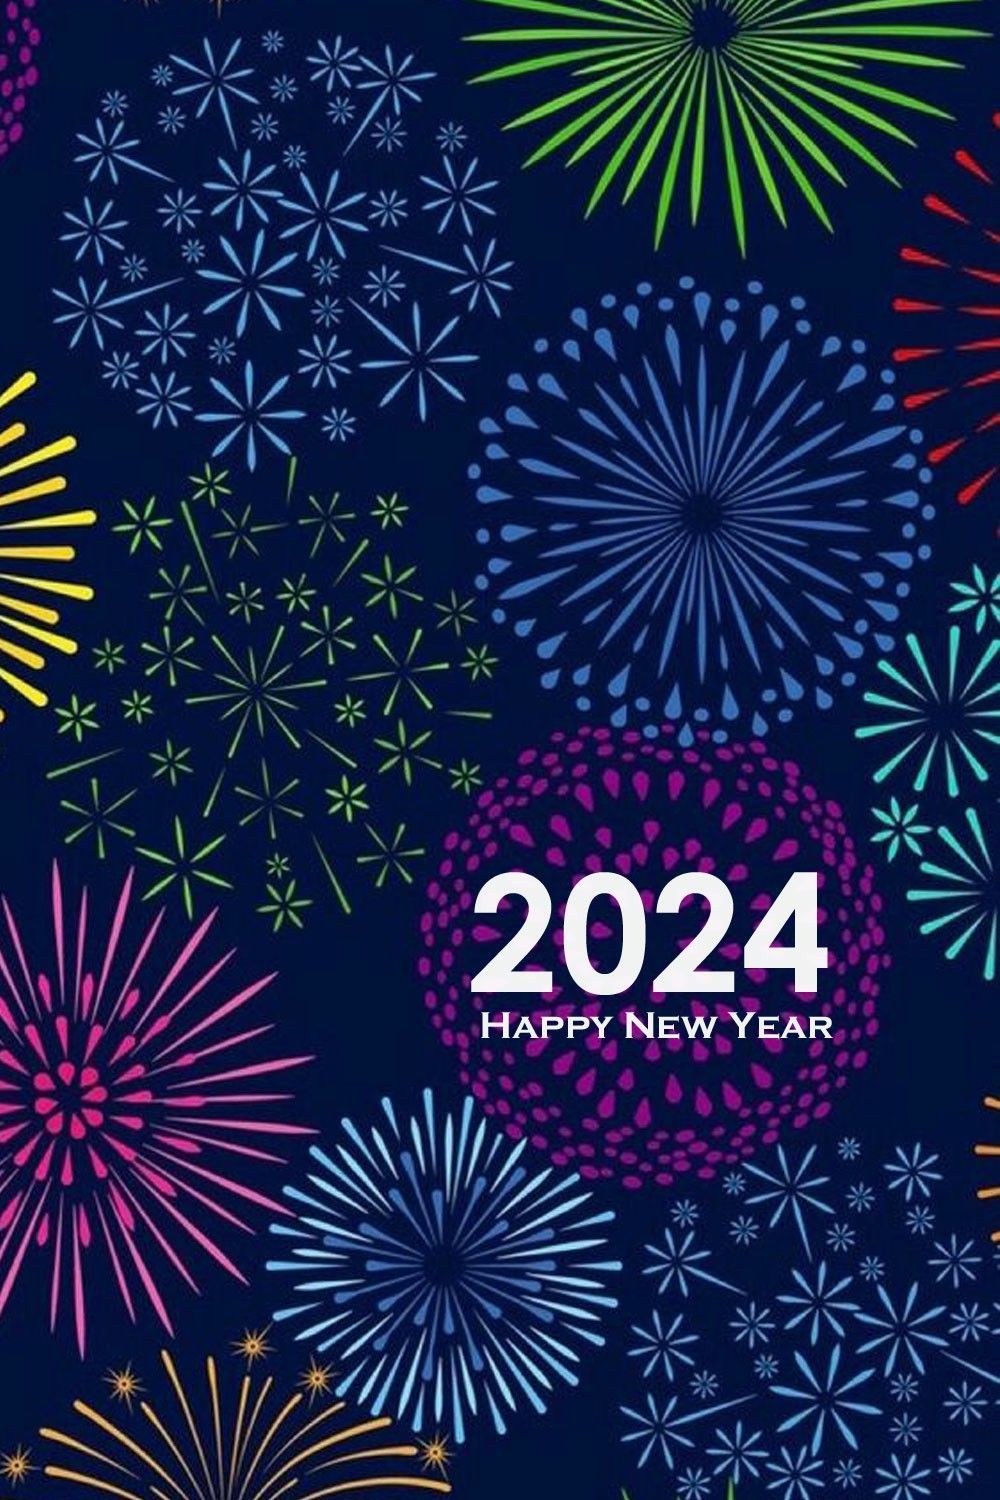 Happy New Year 2024. Happy new year picture, Happy new year wallpaper, Happy new year image